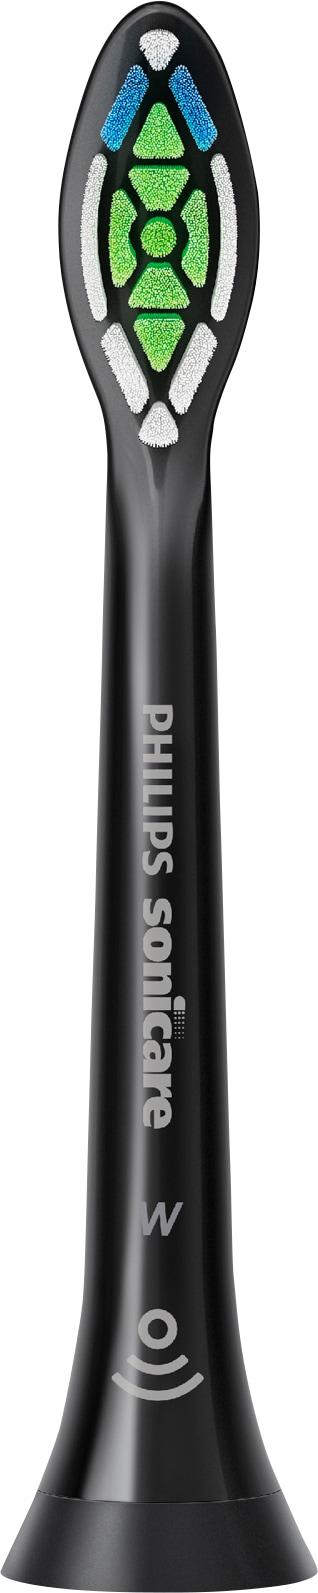 Philips Sonicare Aufsteckbürsten »W2 Optimal White HX6068«, mit der Bürstenkopferkennung, innovativer Sonicare-Schalltechnologie